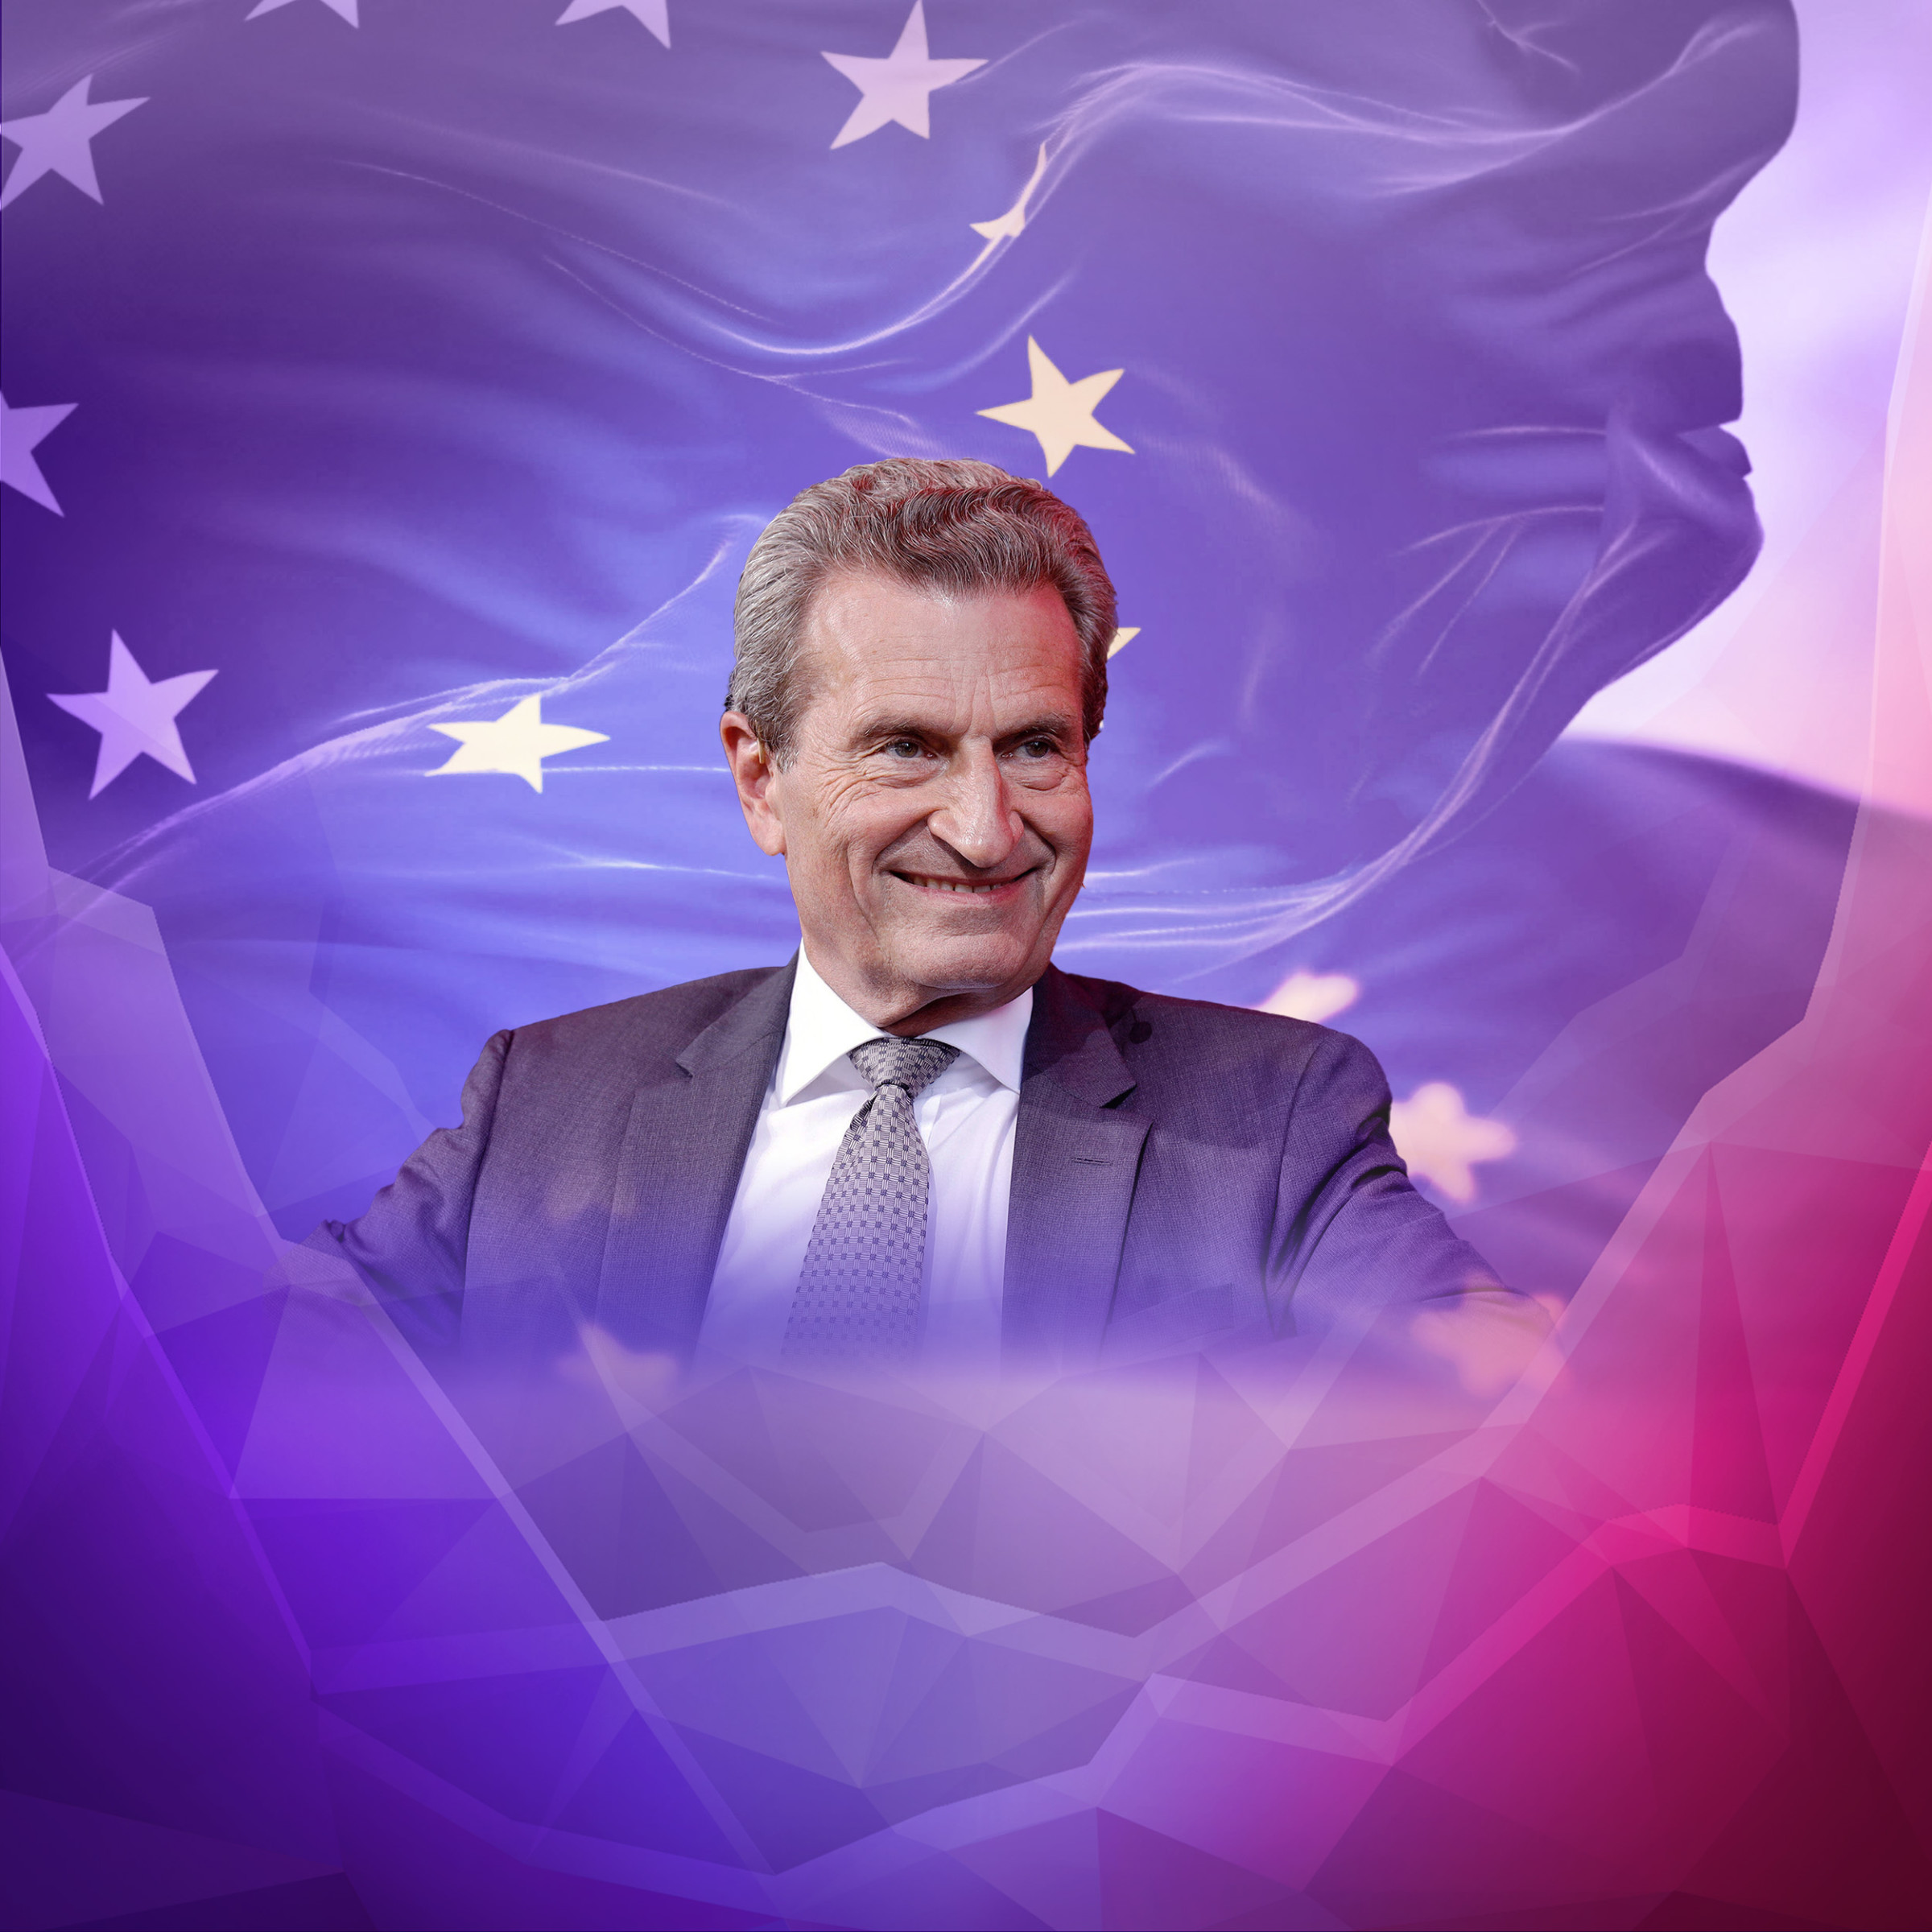 Glauben Sie an das grüne Wirtschaftswunder, Günther Oettinger?